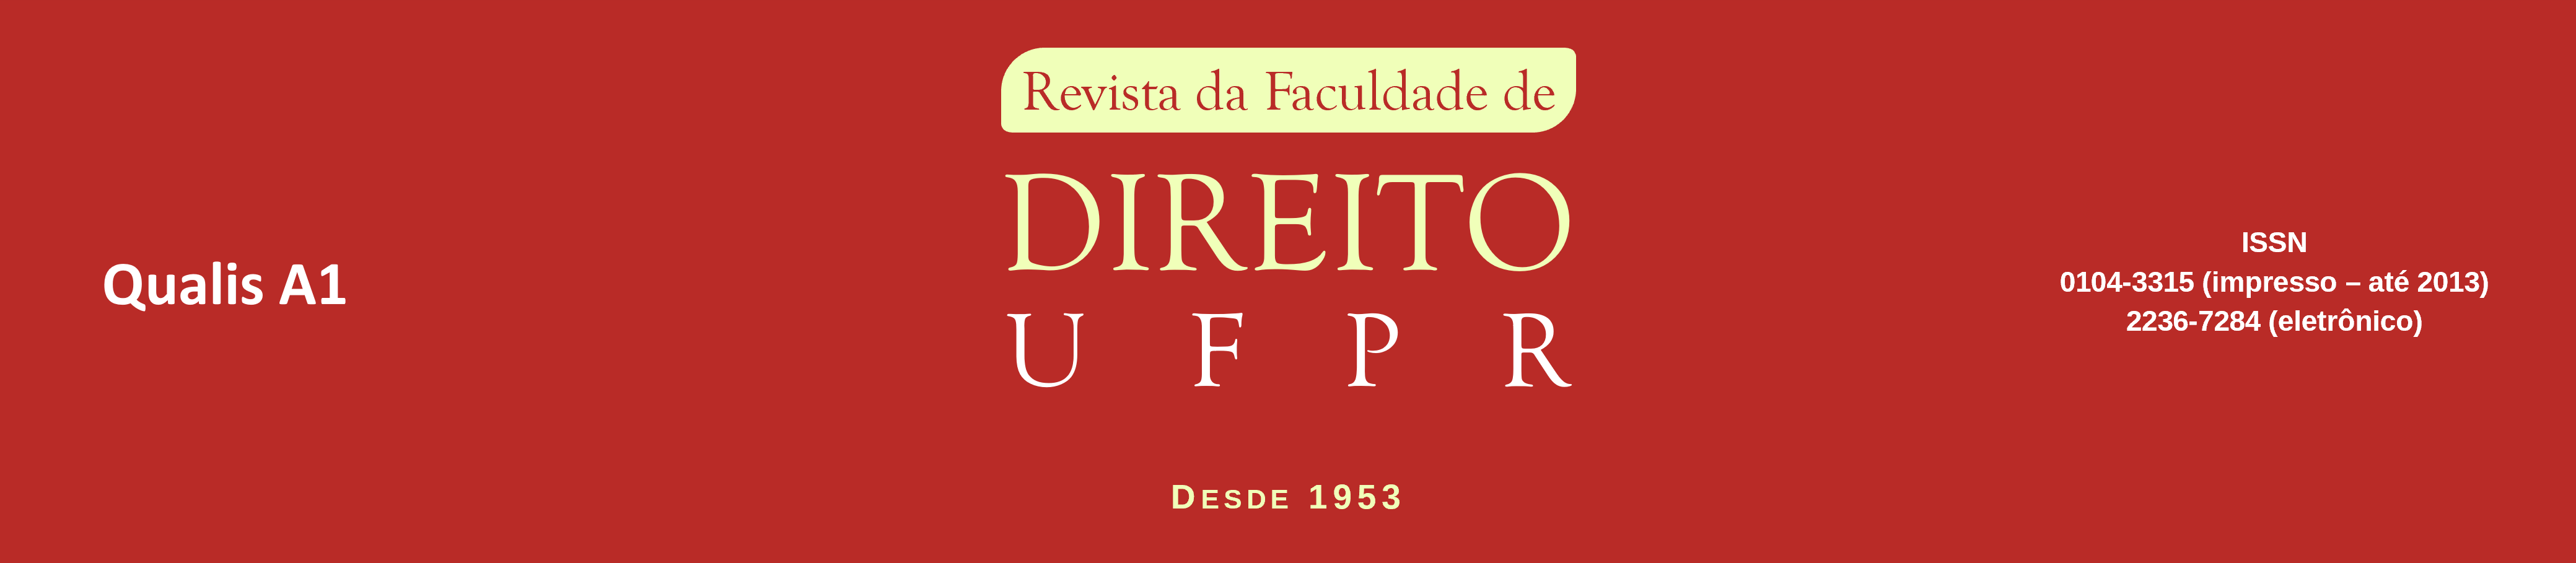 Revista da Faculdade de Direito UFPR. Desde 1953. Qualis A2. ISSN 2236-7284.